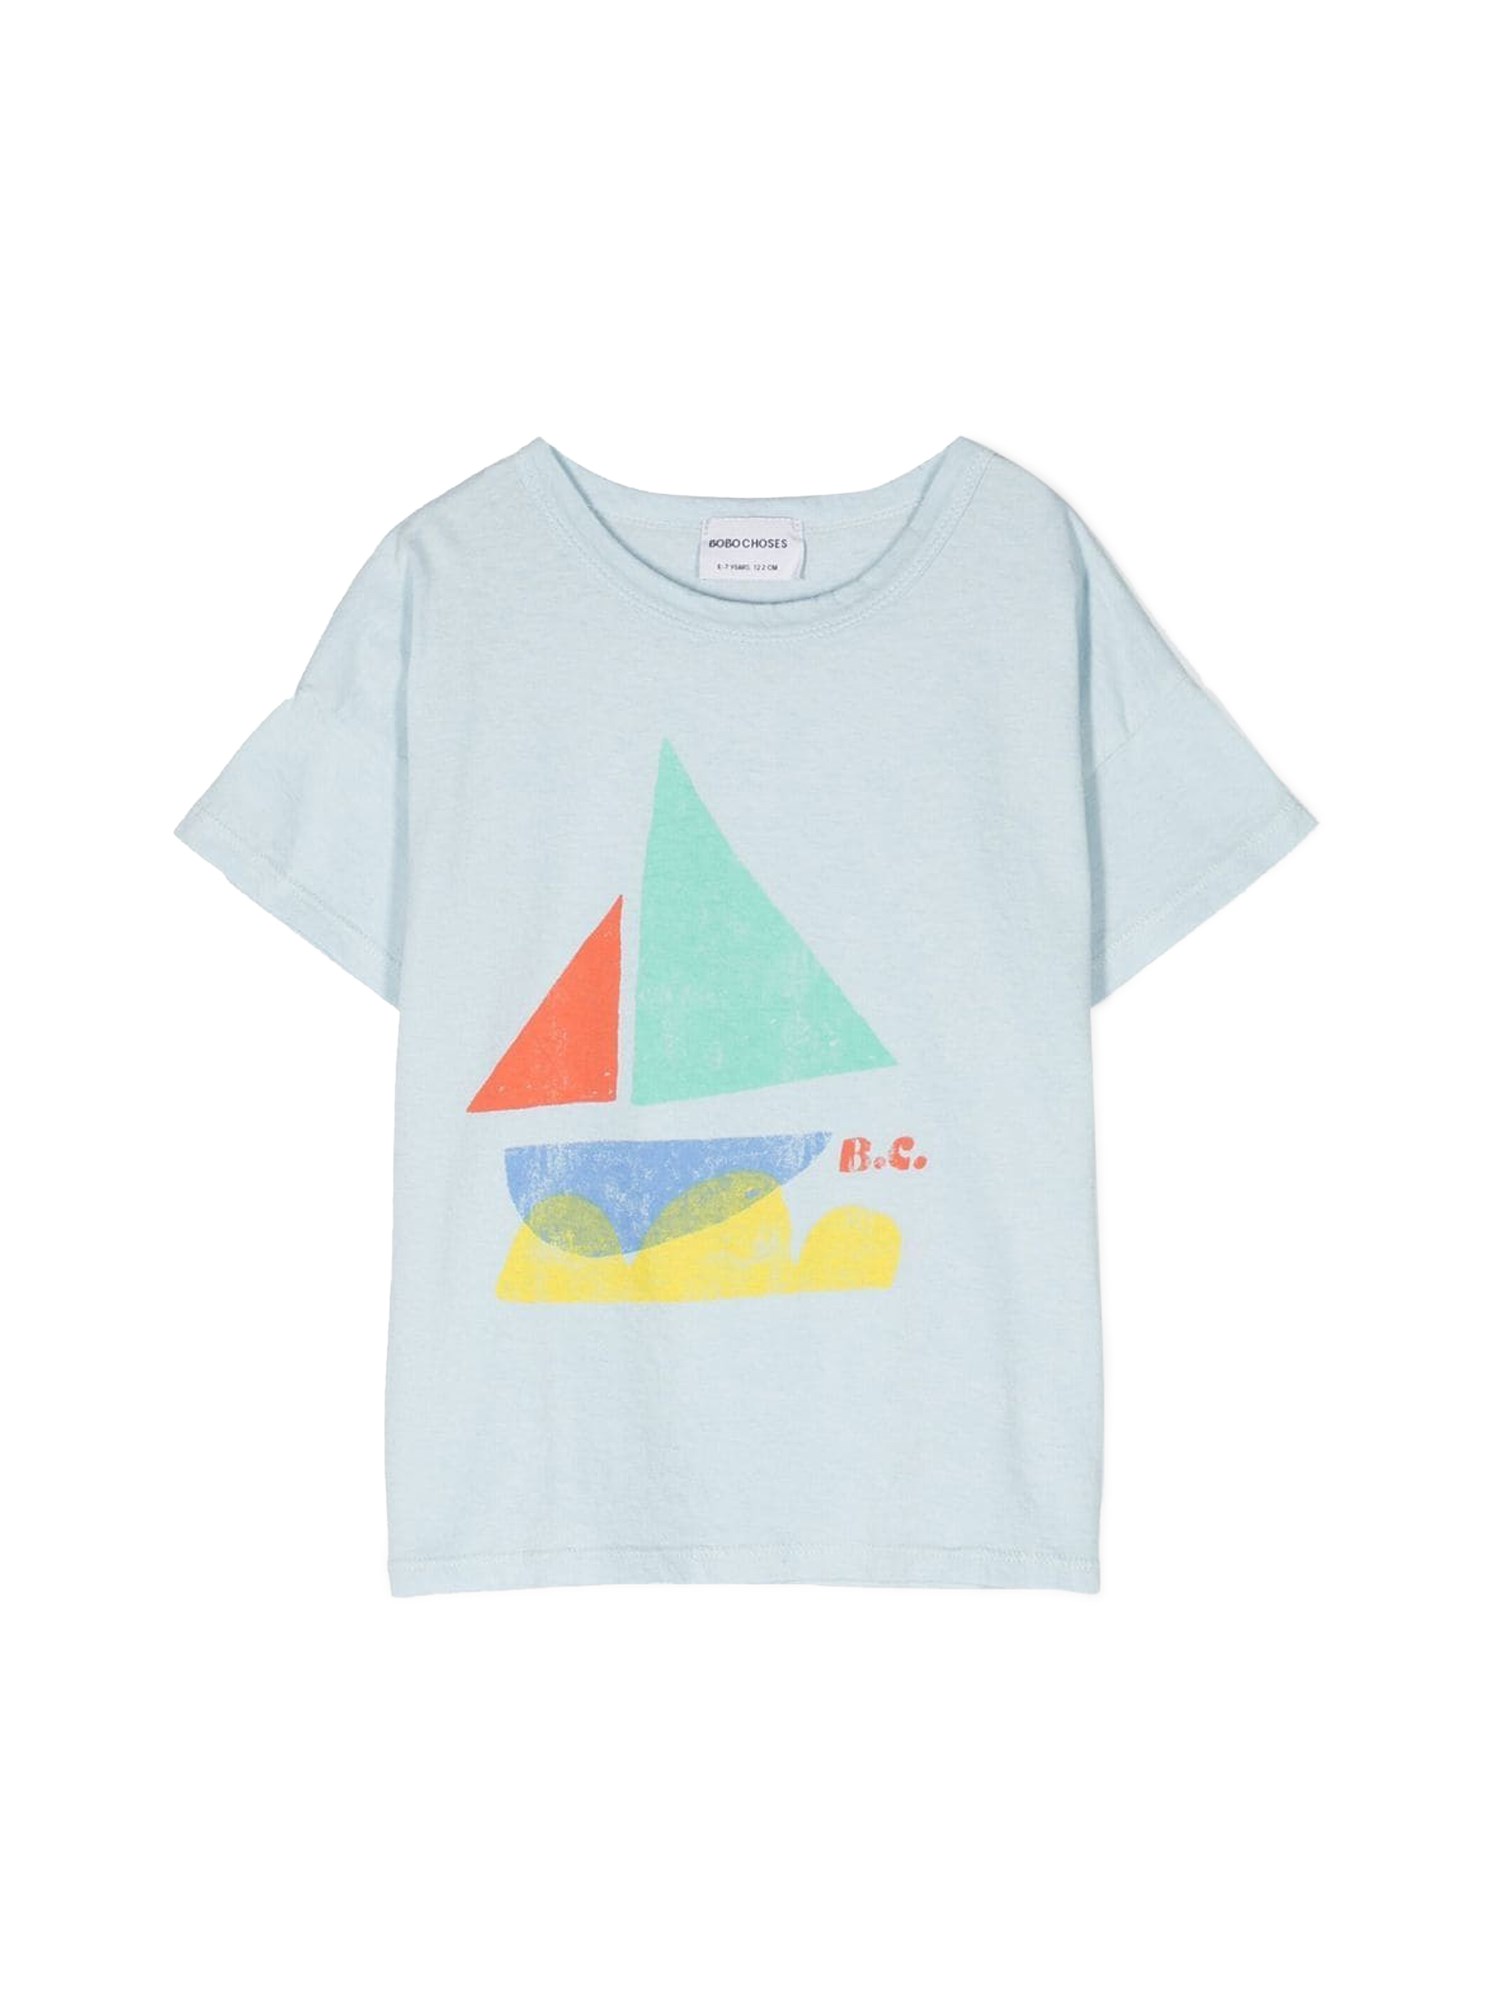 Bobo Choses bobo choses sail boat t-shirt